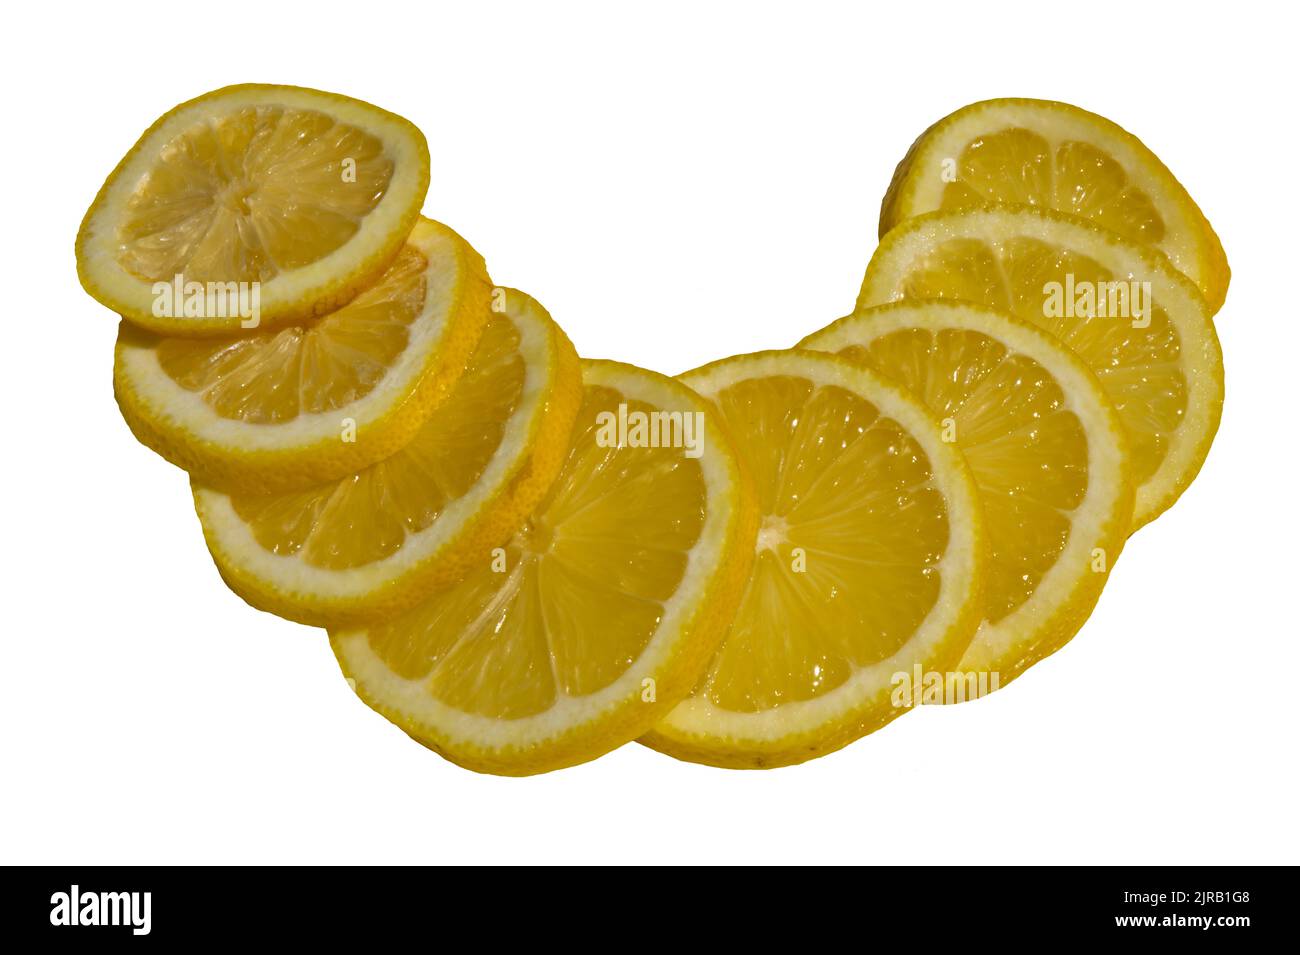 Huit tranches de citron isolées sur fond blanc. (citrons limon, rutaceae) Banque D'Images